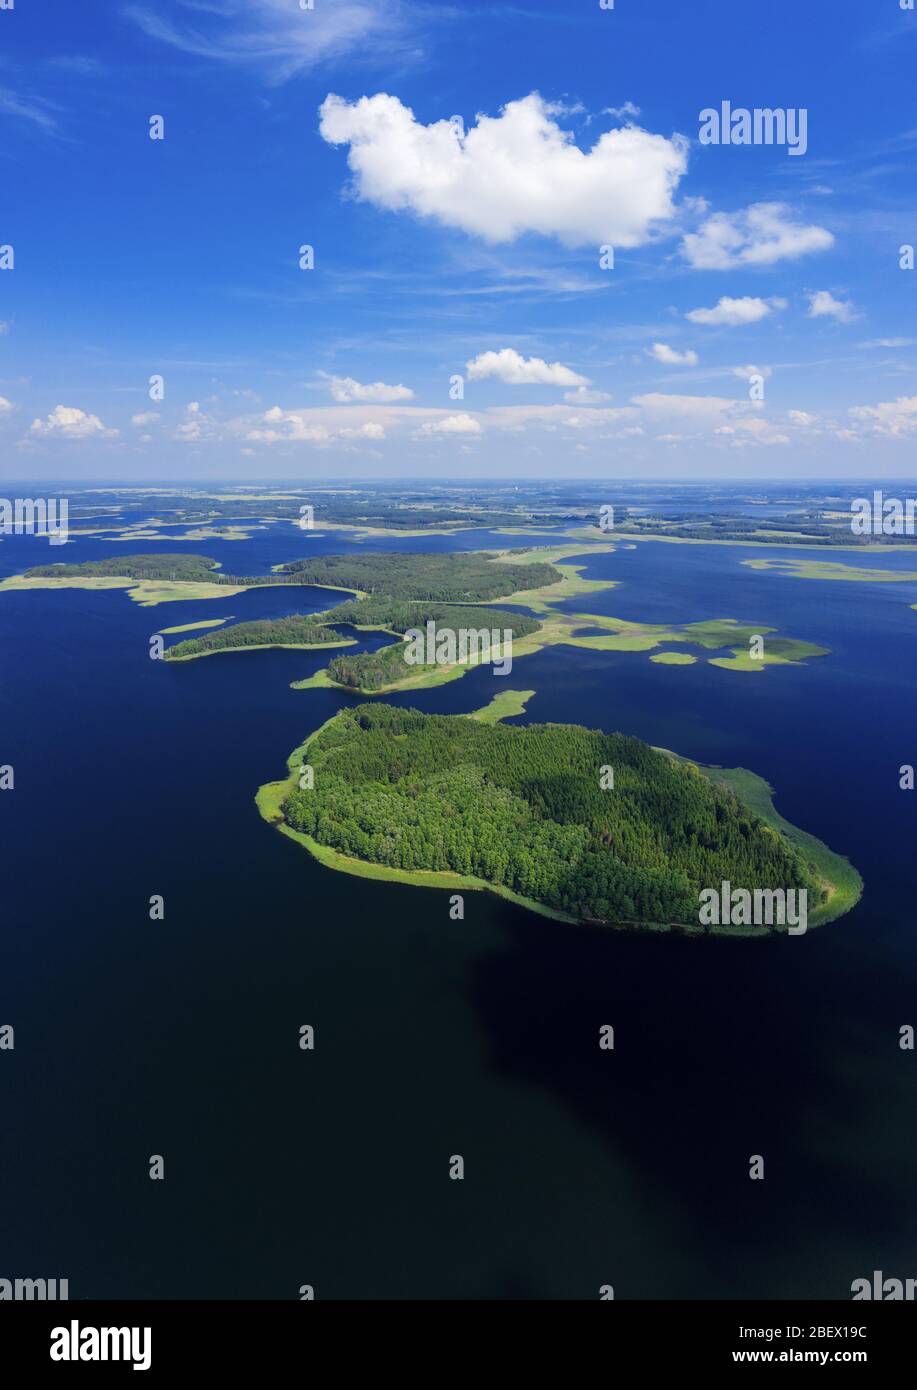 Parc national des lacs Braslaw, Biélorussie. Paysage aérien. Lac avec de belles îles et ciel photo d'été d'un drone Banque D'Images